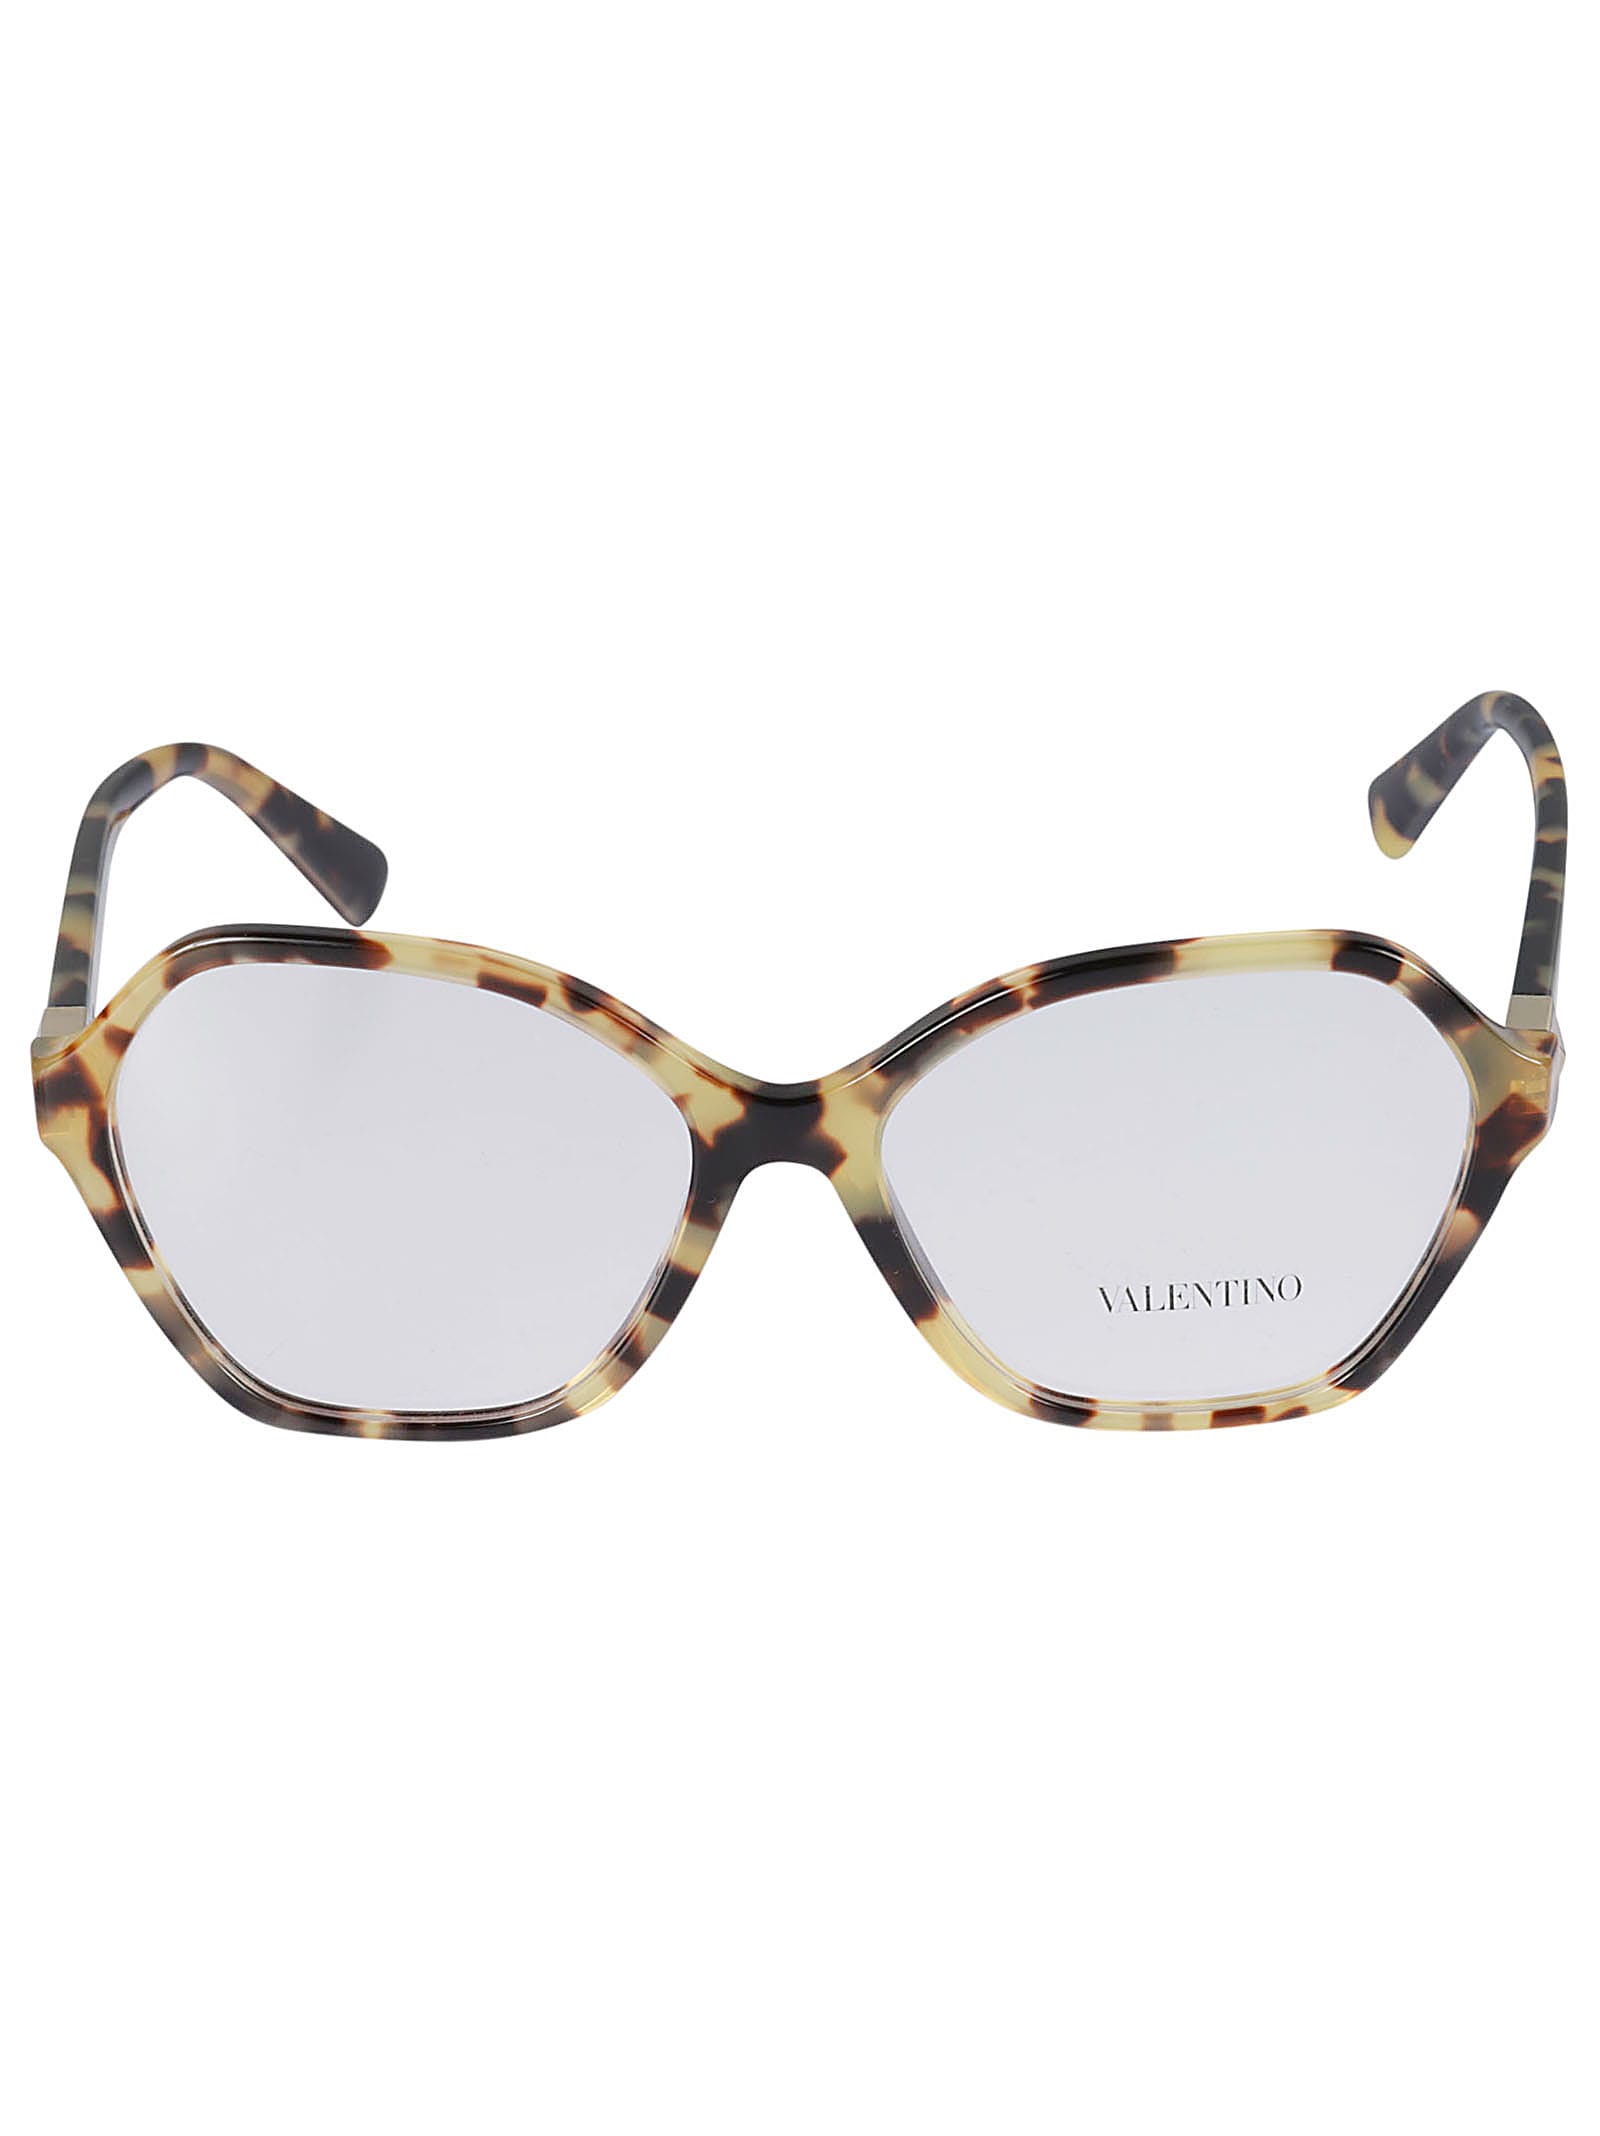 Valentino Vista5036 Glasses